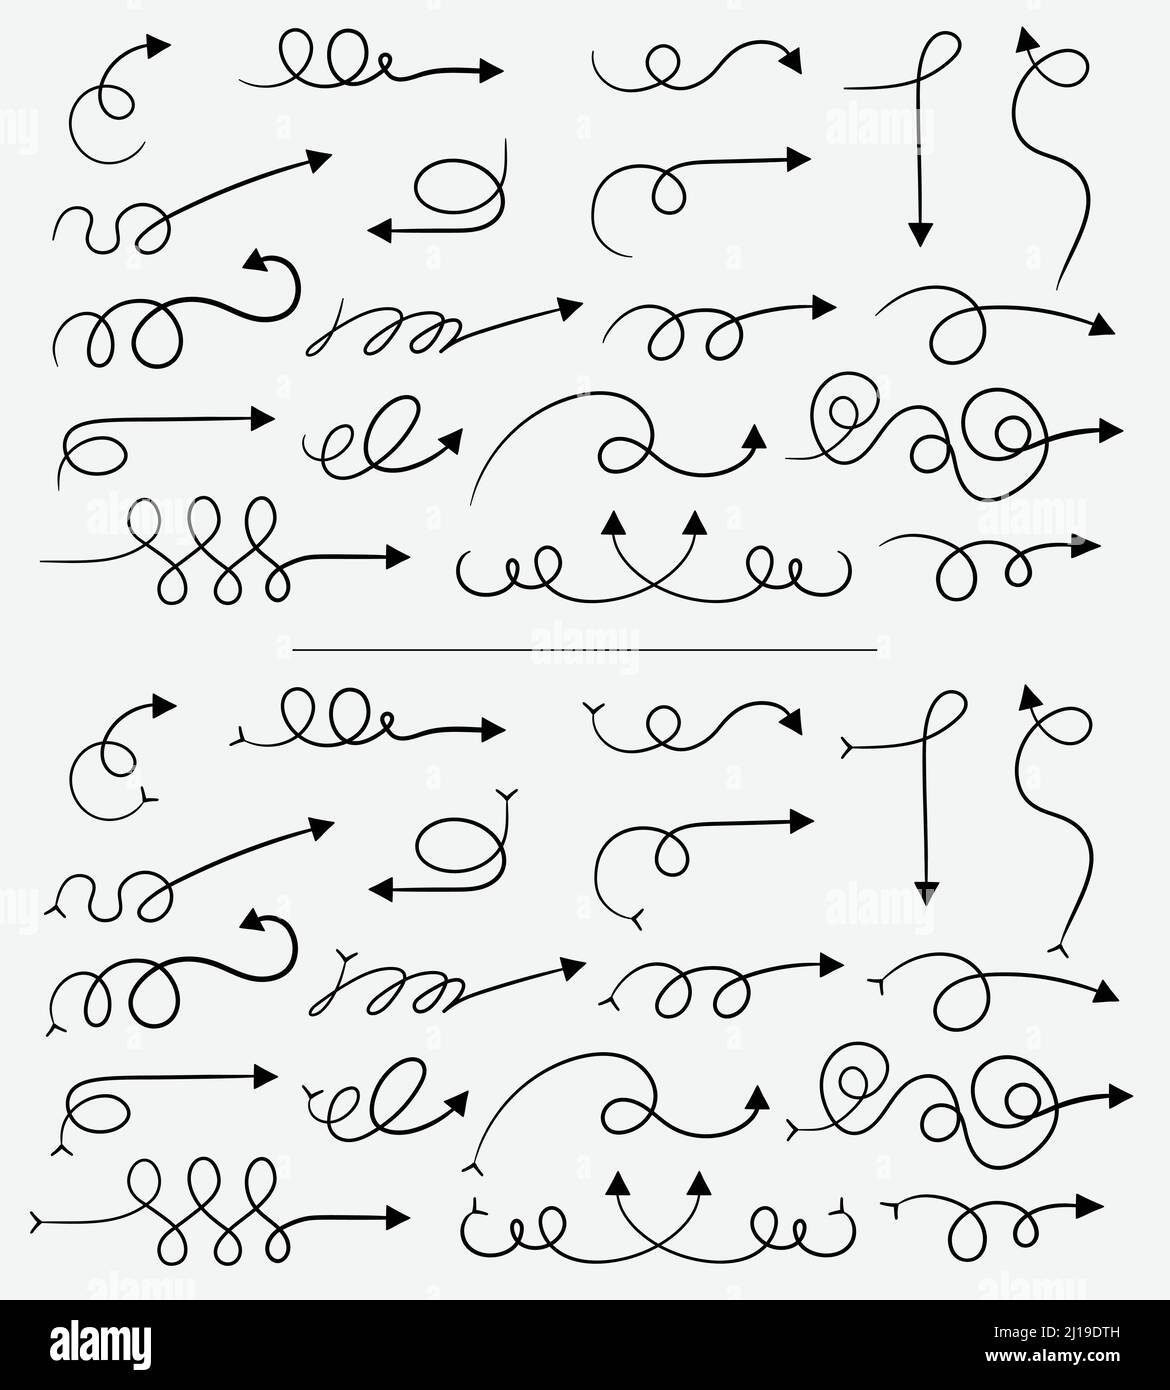 Set di frecce vettoriali, disegnate a mano, a forma di barbatella. Raccolta di frecce a vortice. Illustrazione Vettoriale